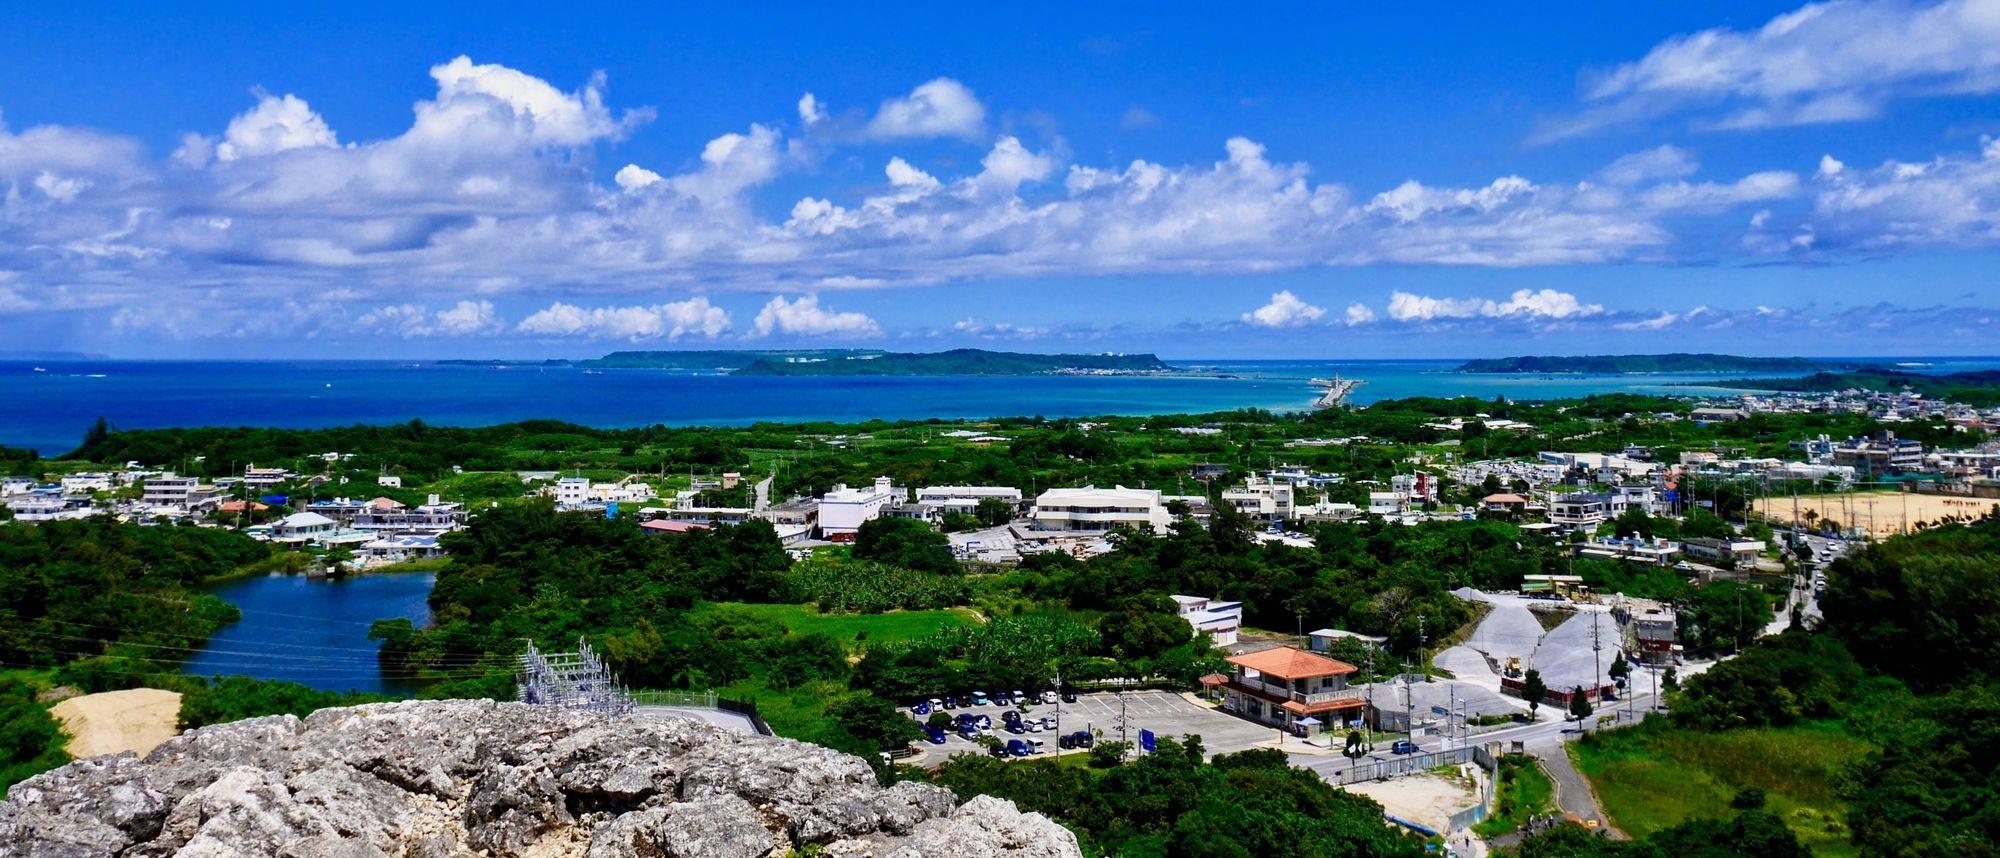 View from Katsuren Castle Ruins in Uruma, Okinawa.